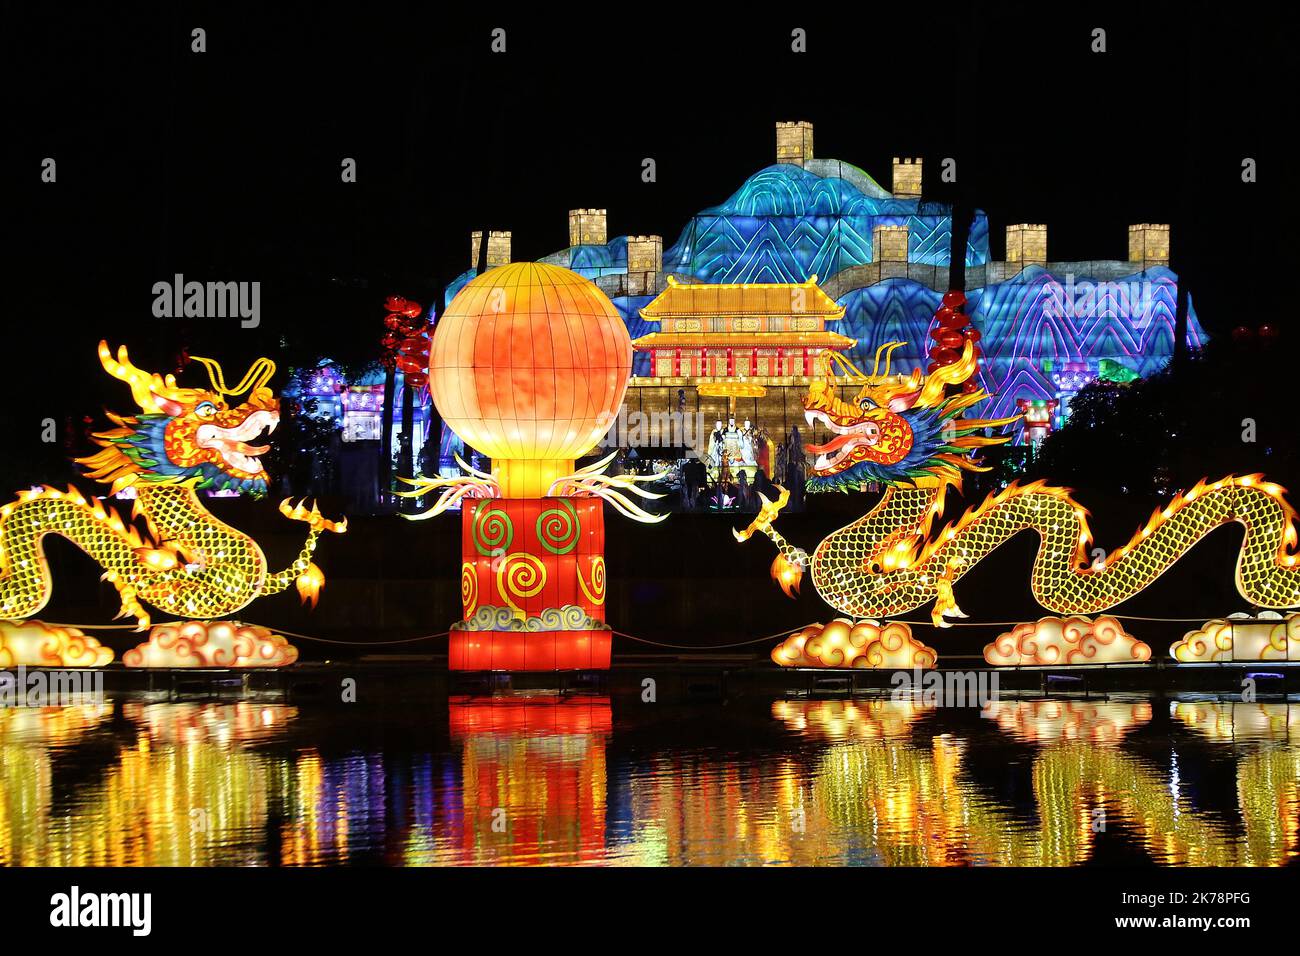 Chinesische Laternen werden im Rahmen des chinesischen Laternenfestivals gezeigt, das am Freitag, dem 13. Dezember 2019, in Nizza, Frankreich, stattfindet. Stockfoto